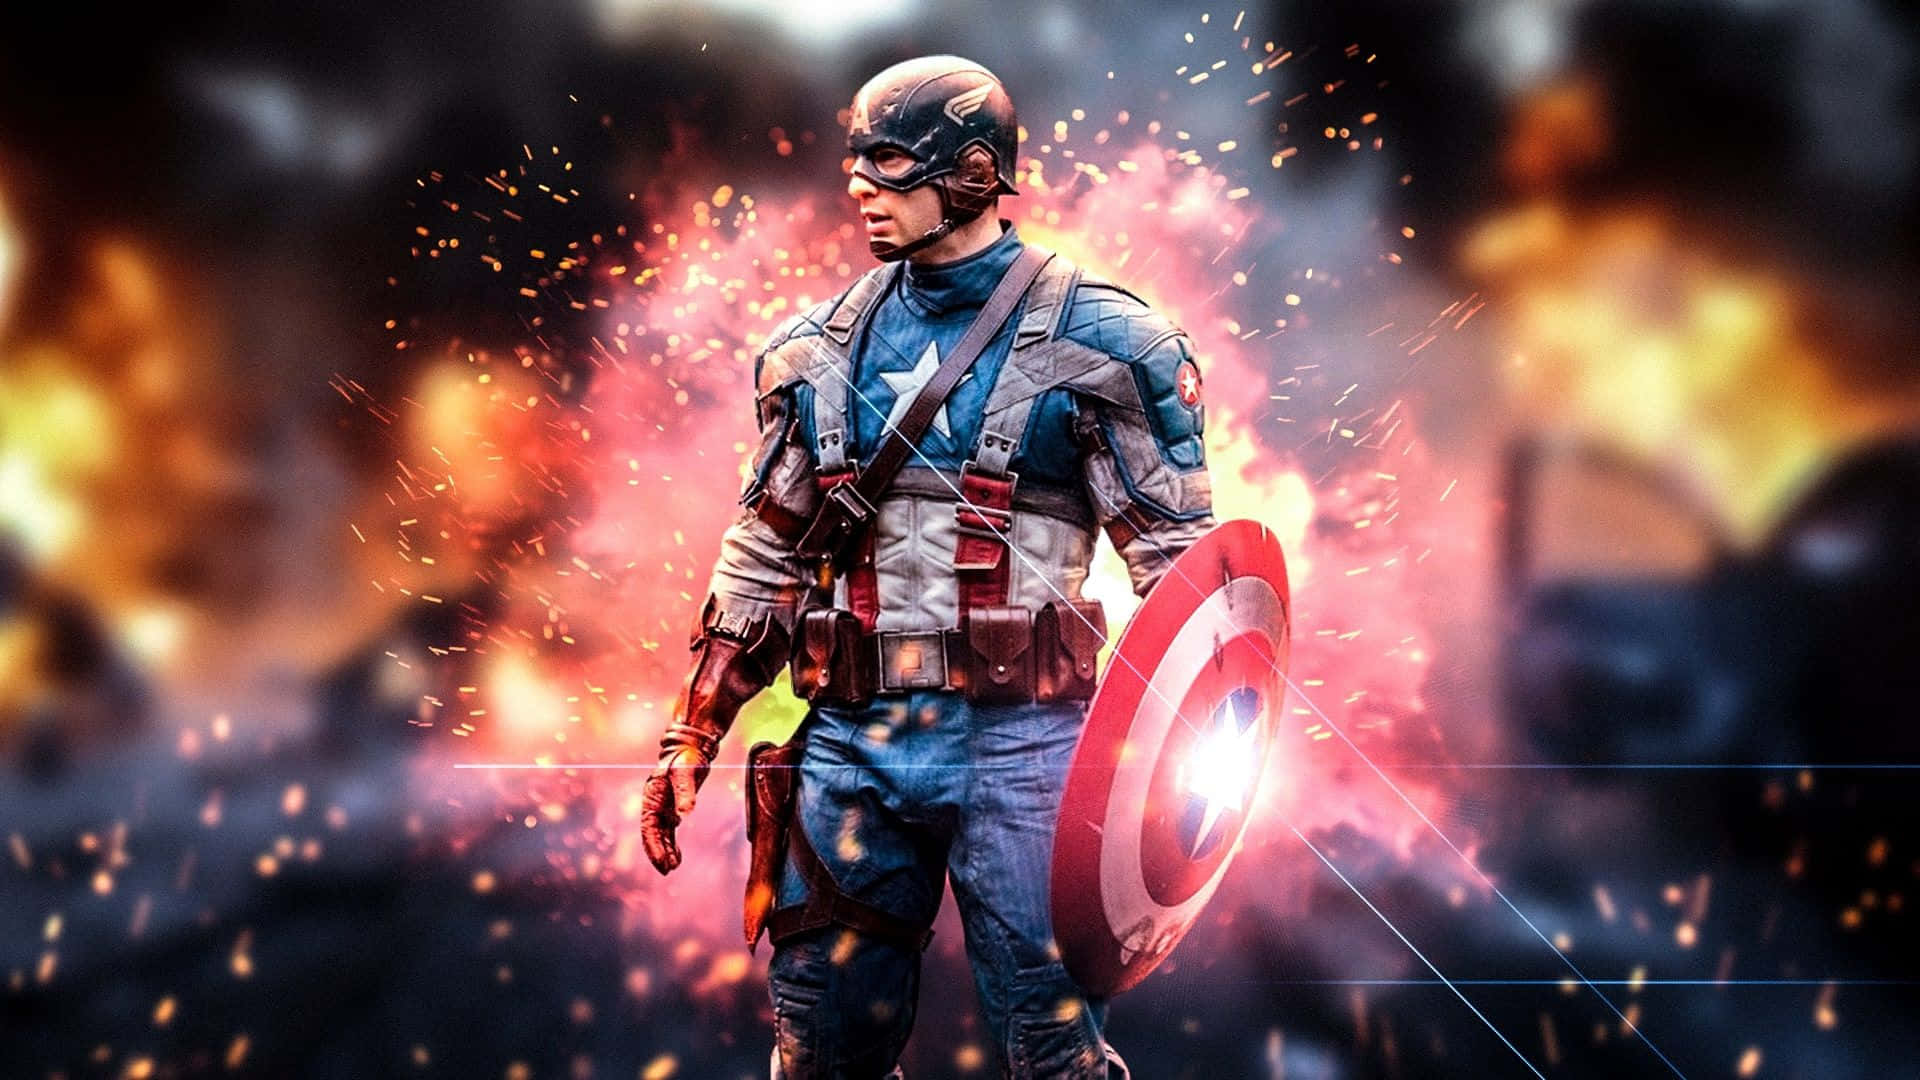 Captain America Action Backdrop Wallpaper